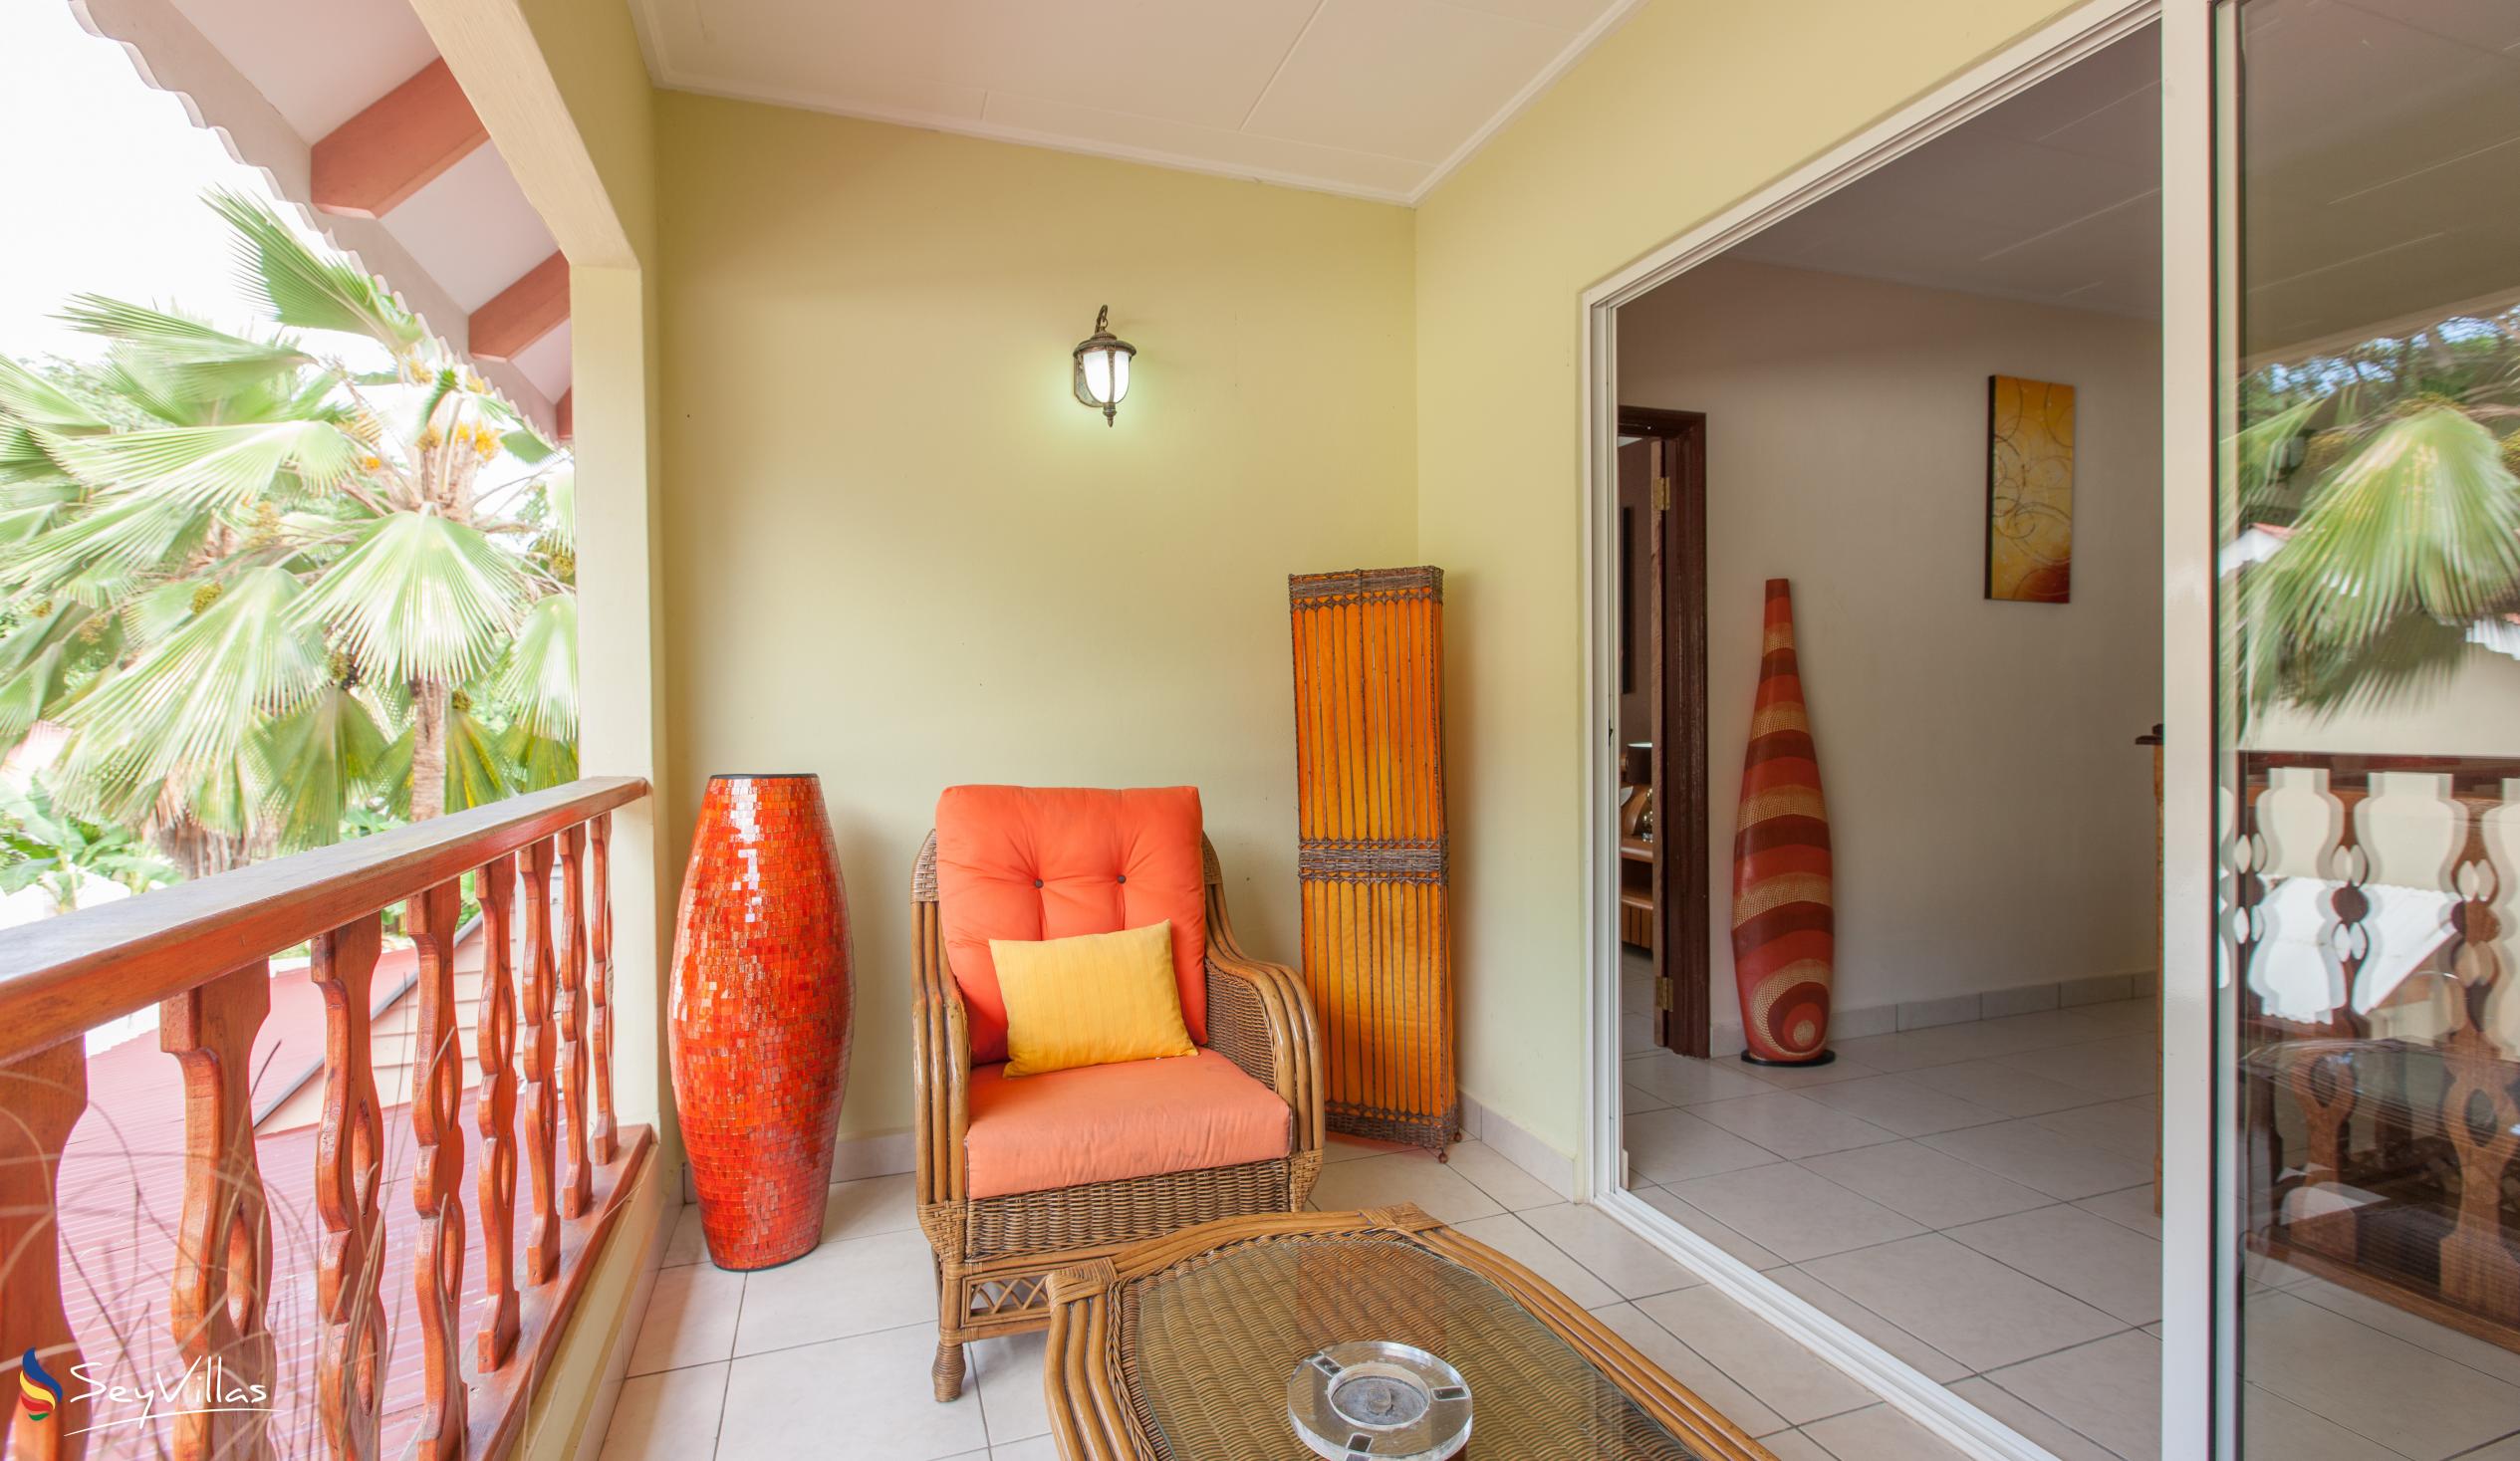 Photo 25: Villa Authentique - Standard Room - La Digue (Seychelles)